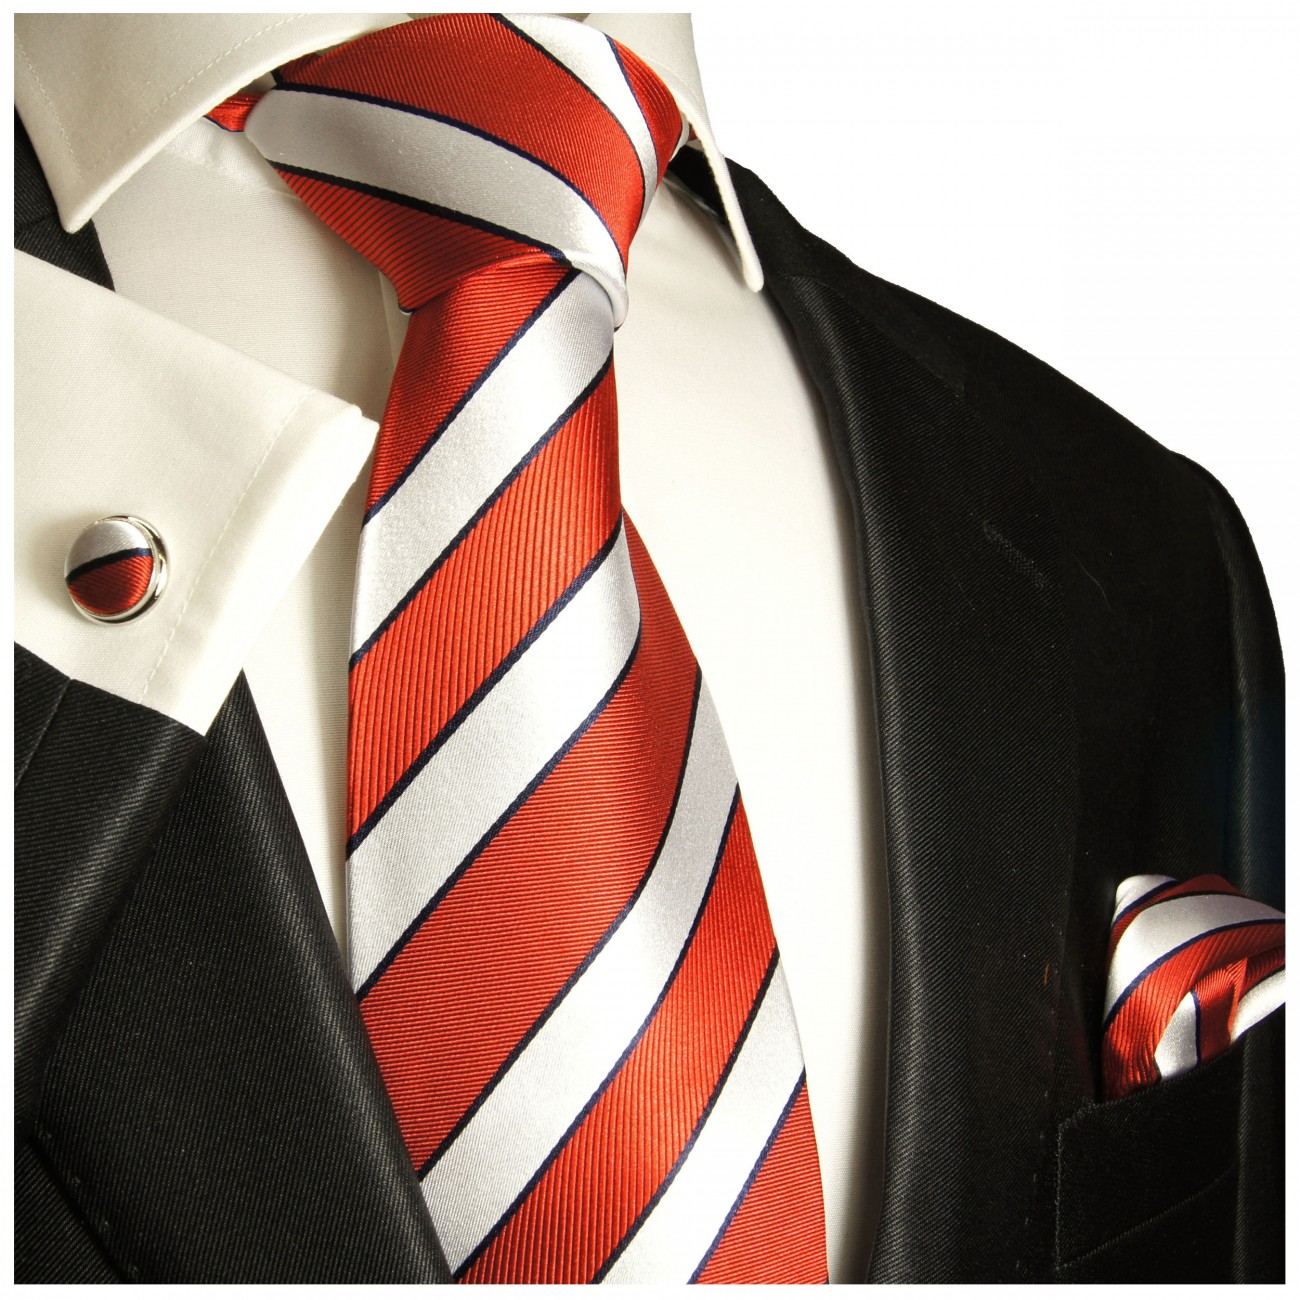 Krawatte rot silber gestreift Seide mit Einstecktuch und Manschettenknöpfe